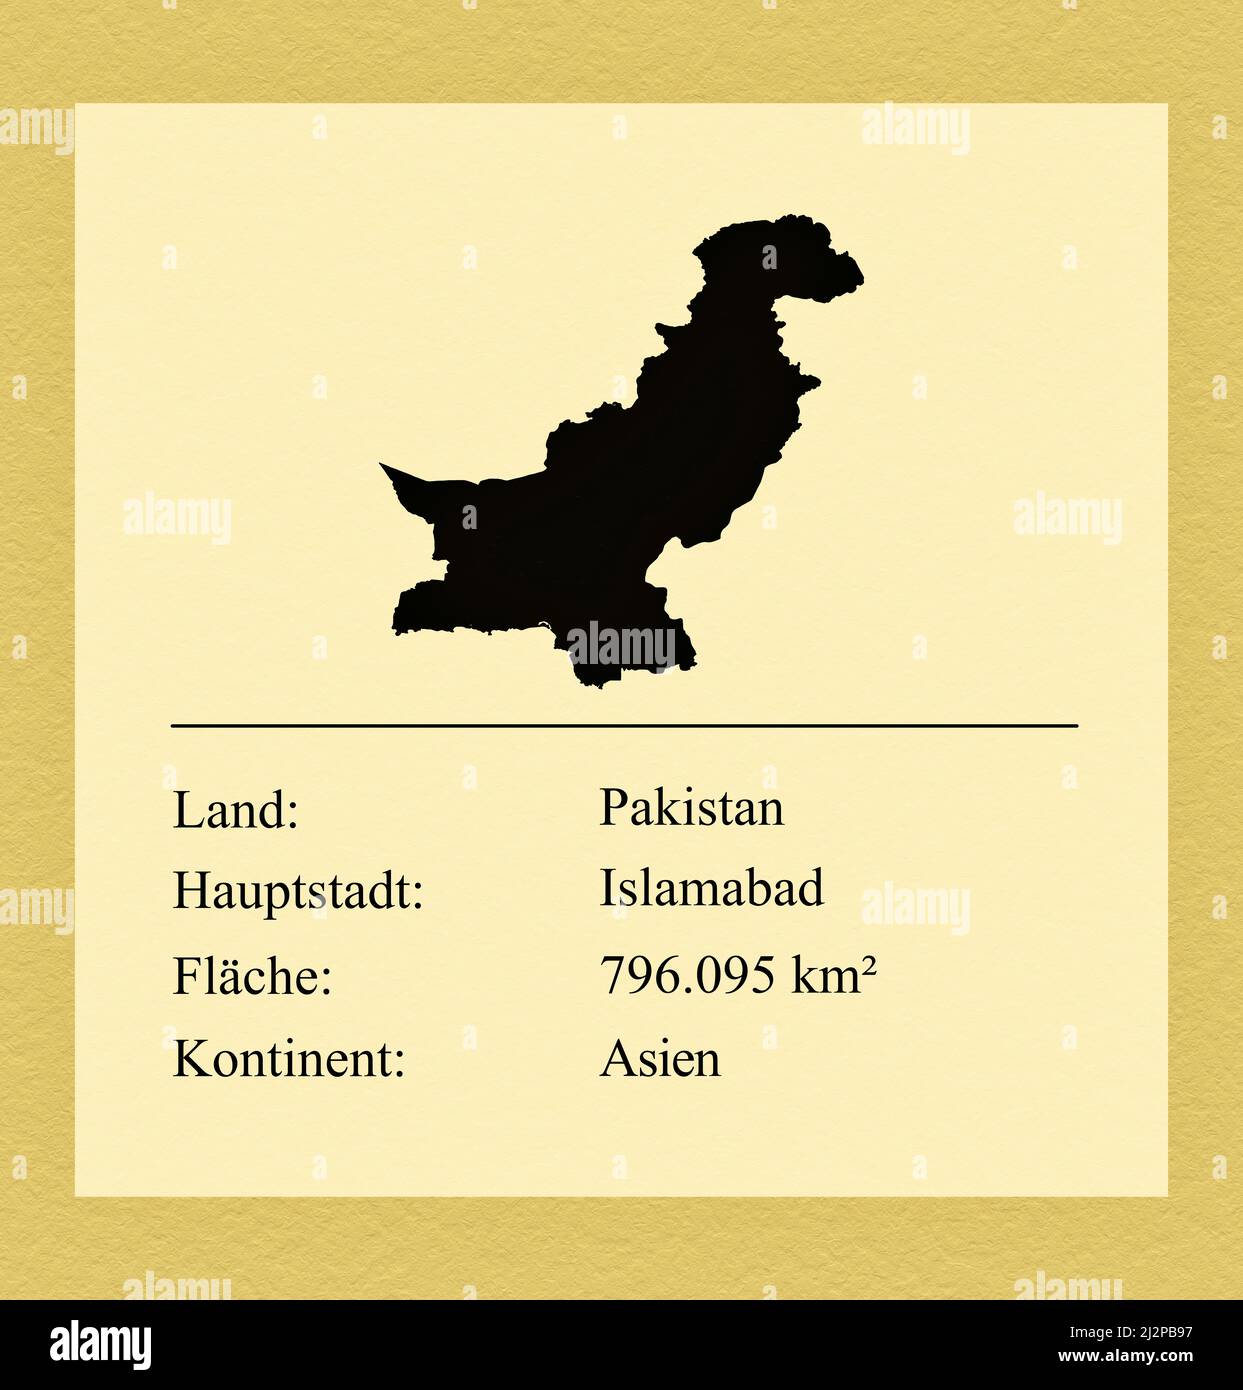 Umrisse des Landes Pakistan, darunter ein kleiner Steckbrief mit Ländernamen, Hauptstadt, Fläche und Kontinent Stock Photo